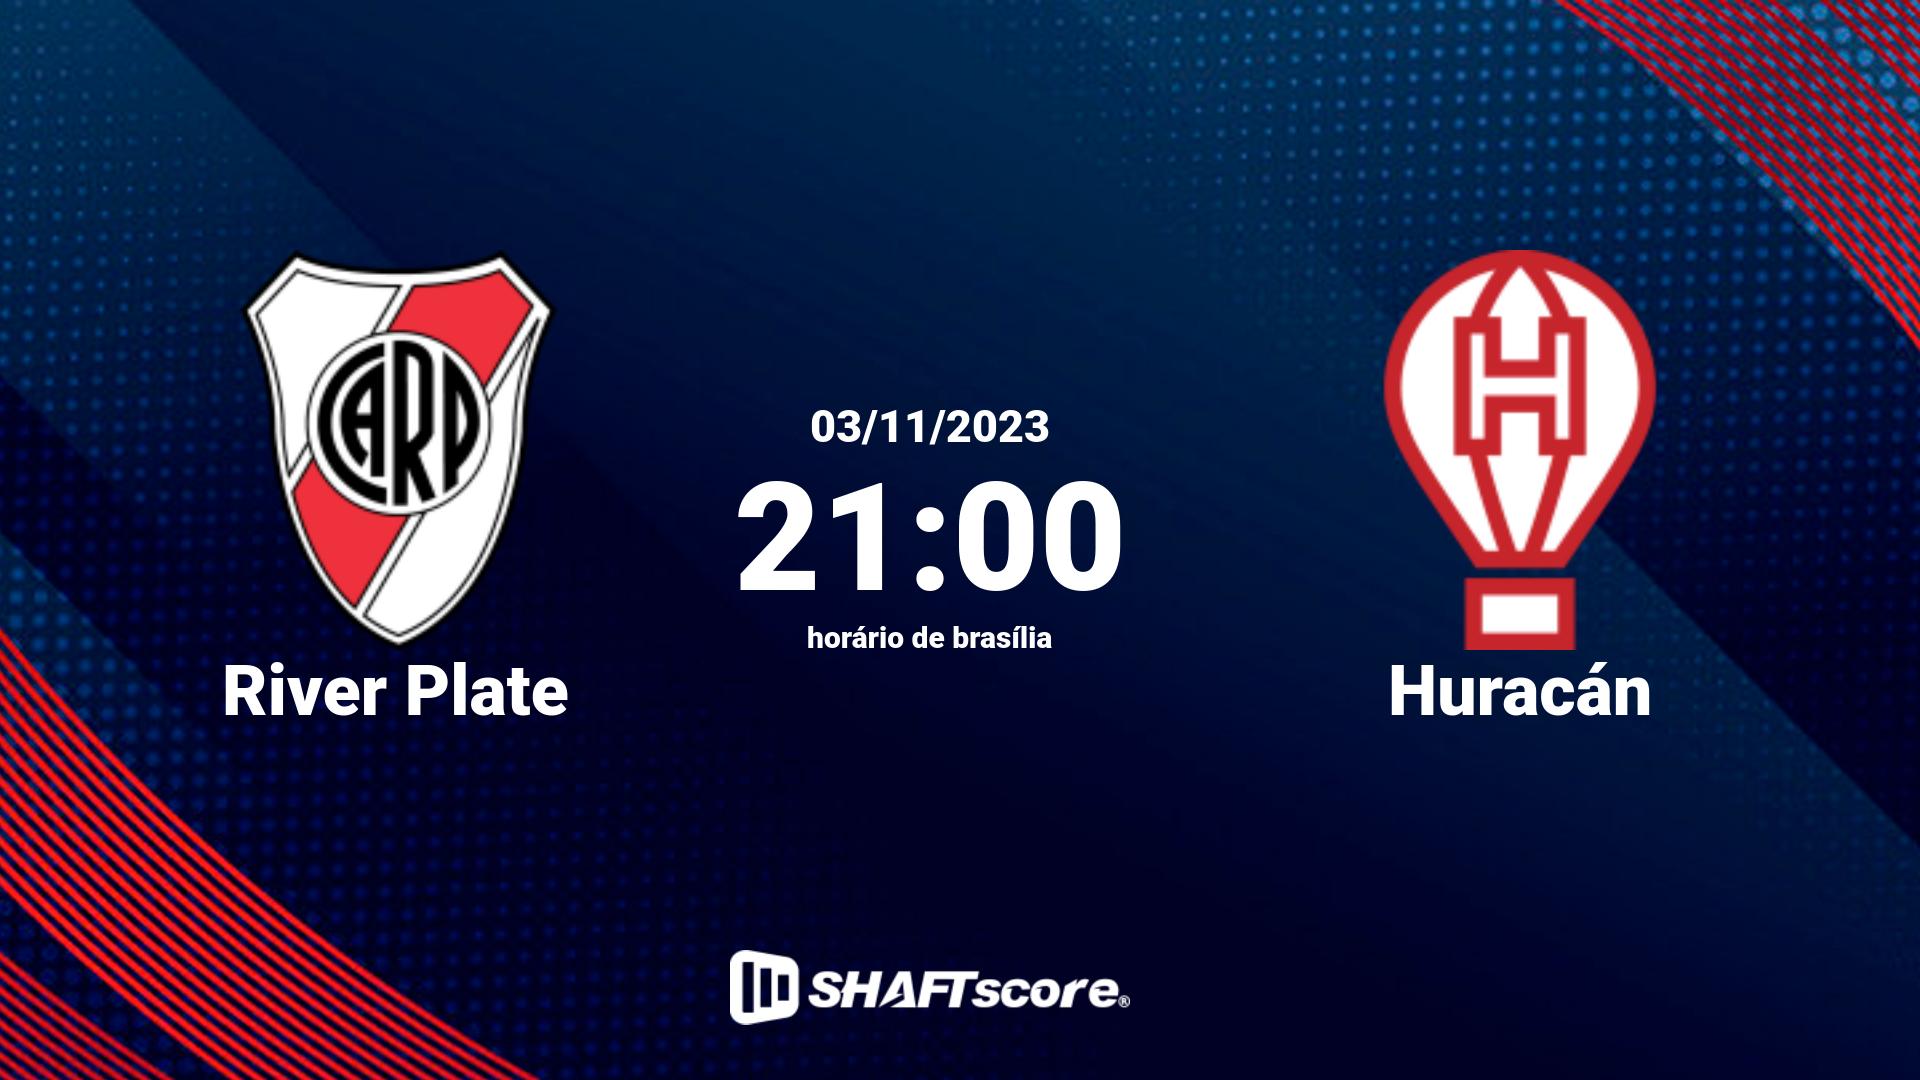 Estatísticas do jogo River Plate vs Huracán 03.11 21:00